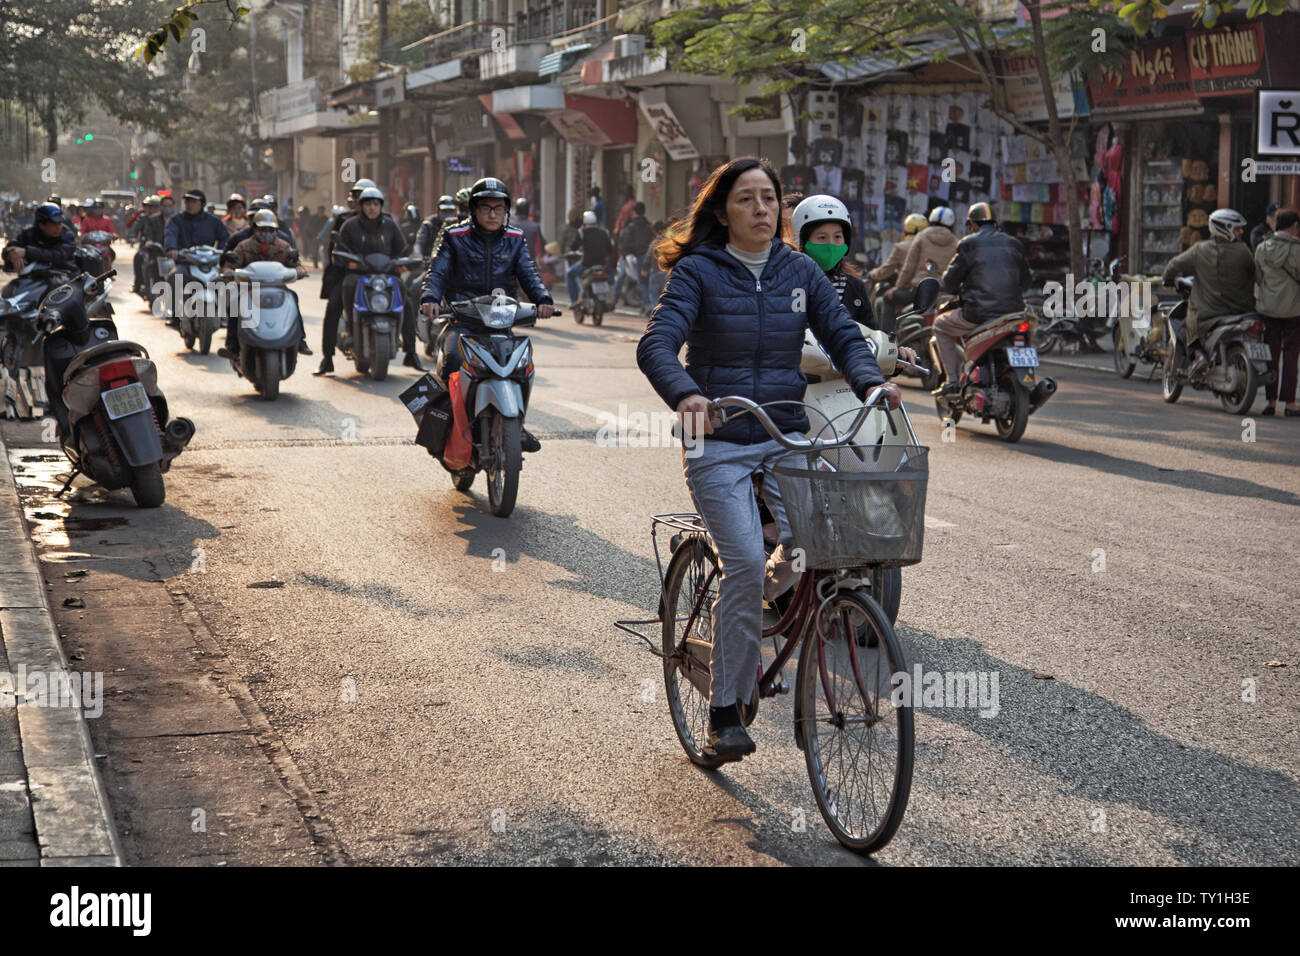 Hanoi, Vietnam - 23 dicembre 2013: il traffico intenso di scooter e biciclette su una strada di Hanoi con una donna in sella ad una bicicletta in primo piano Foto Stock